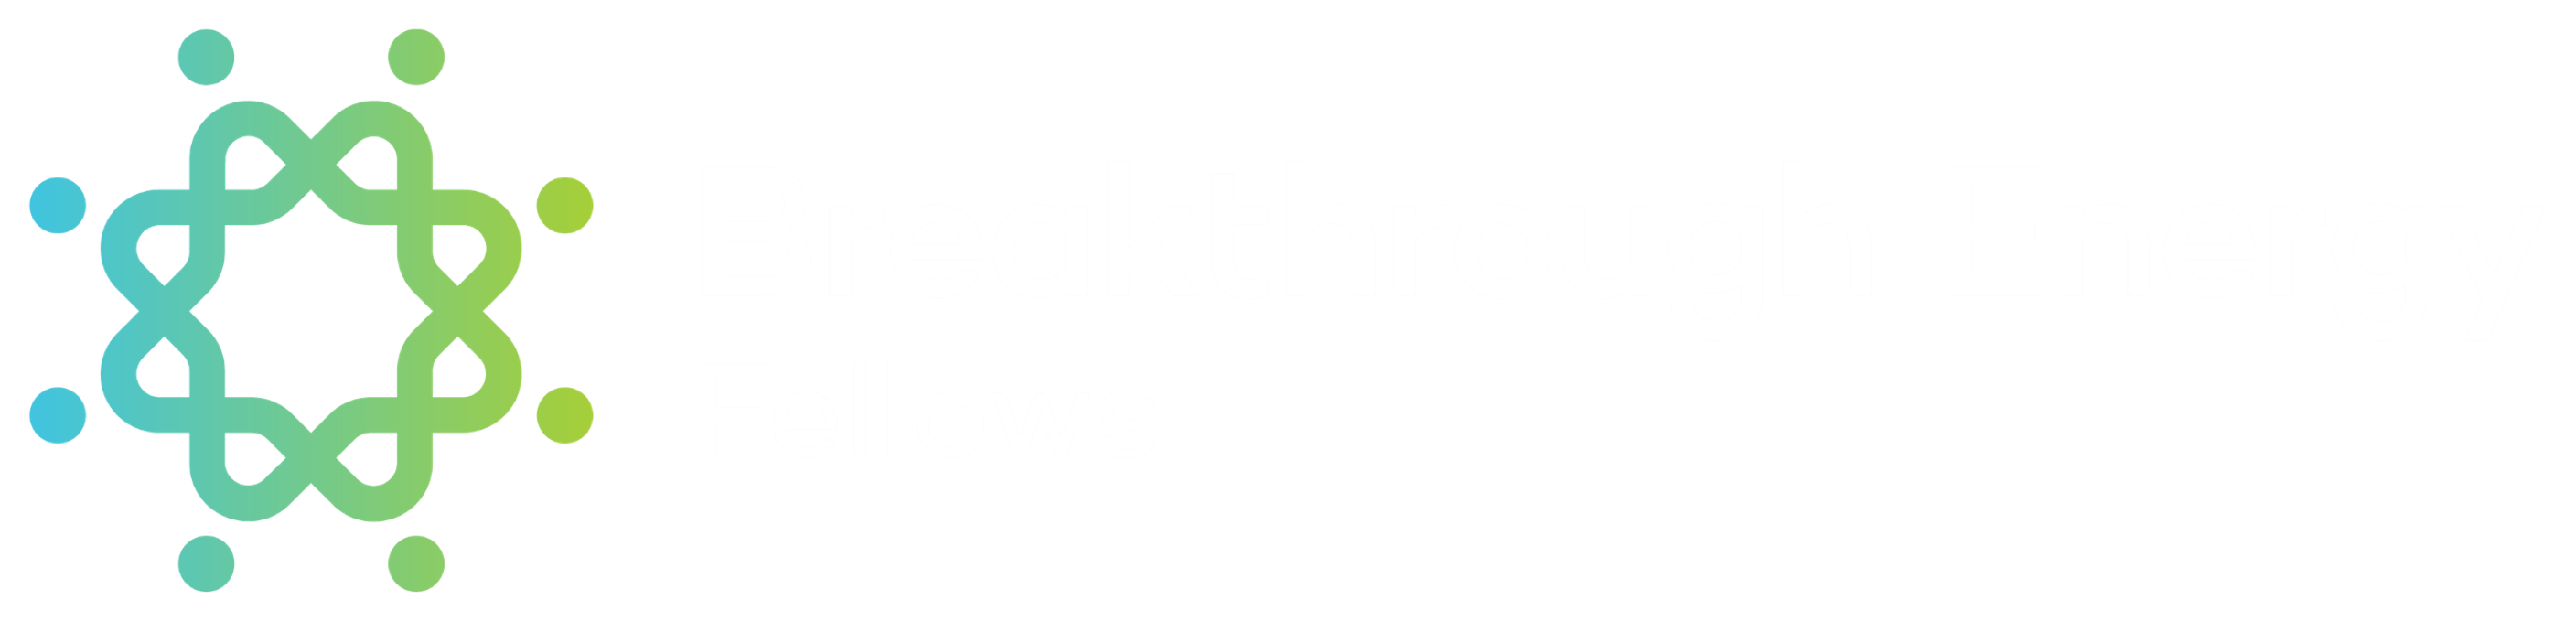 Breakthrough Energy Fellows logo